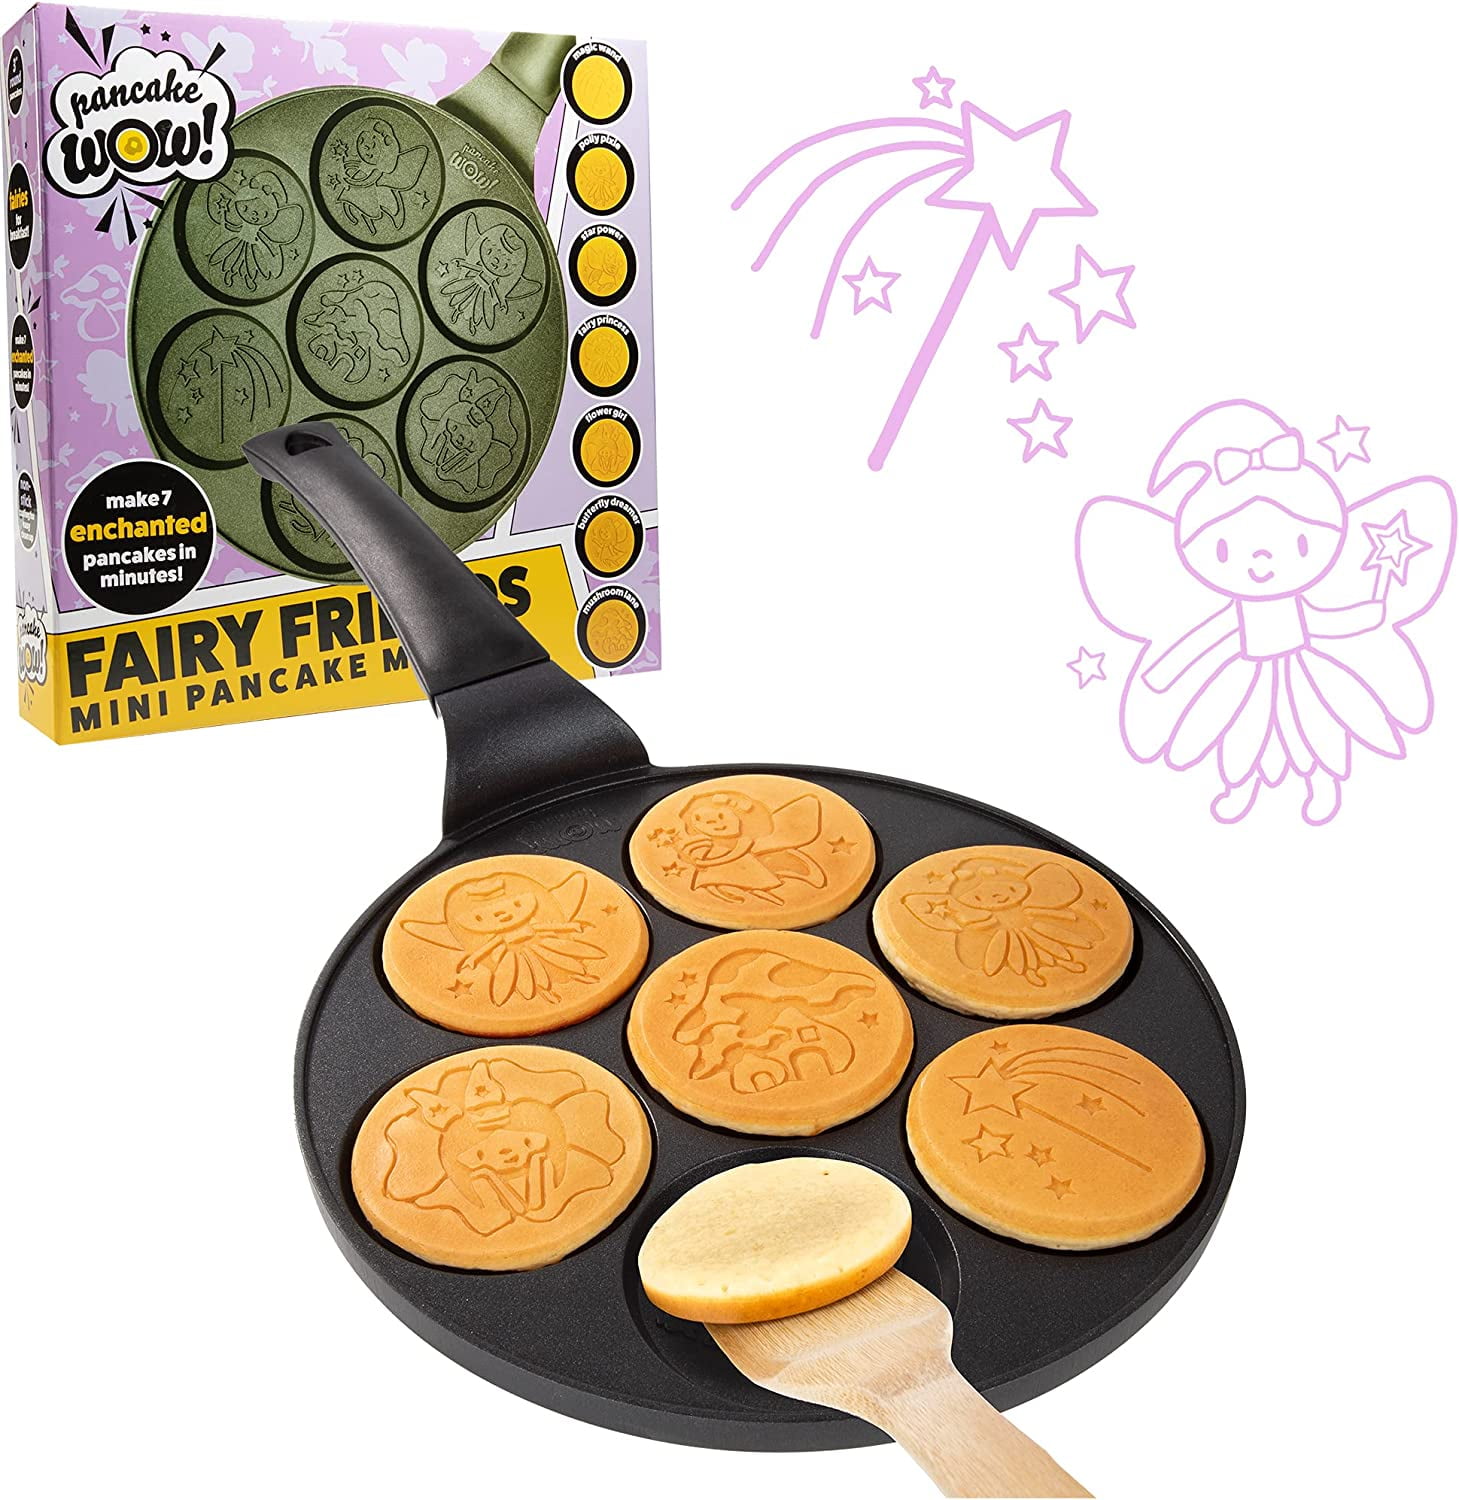 Орифлейм Pancake Pan 5222018. Make pan